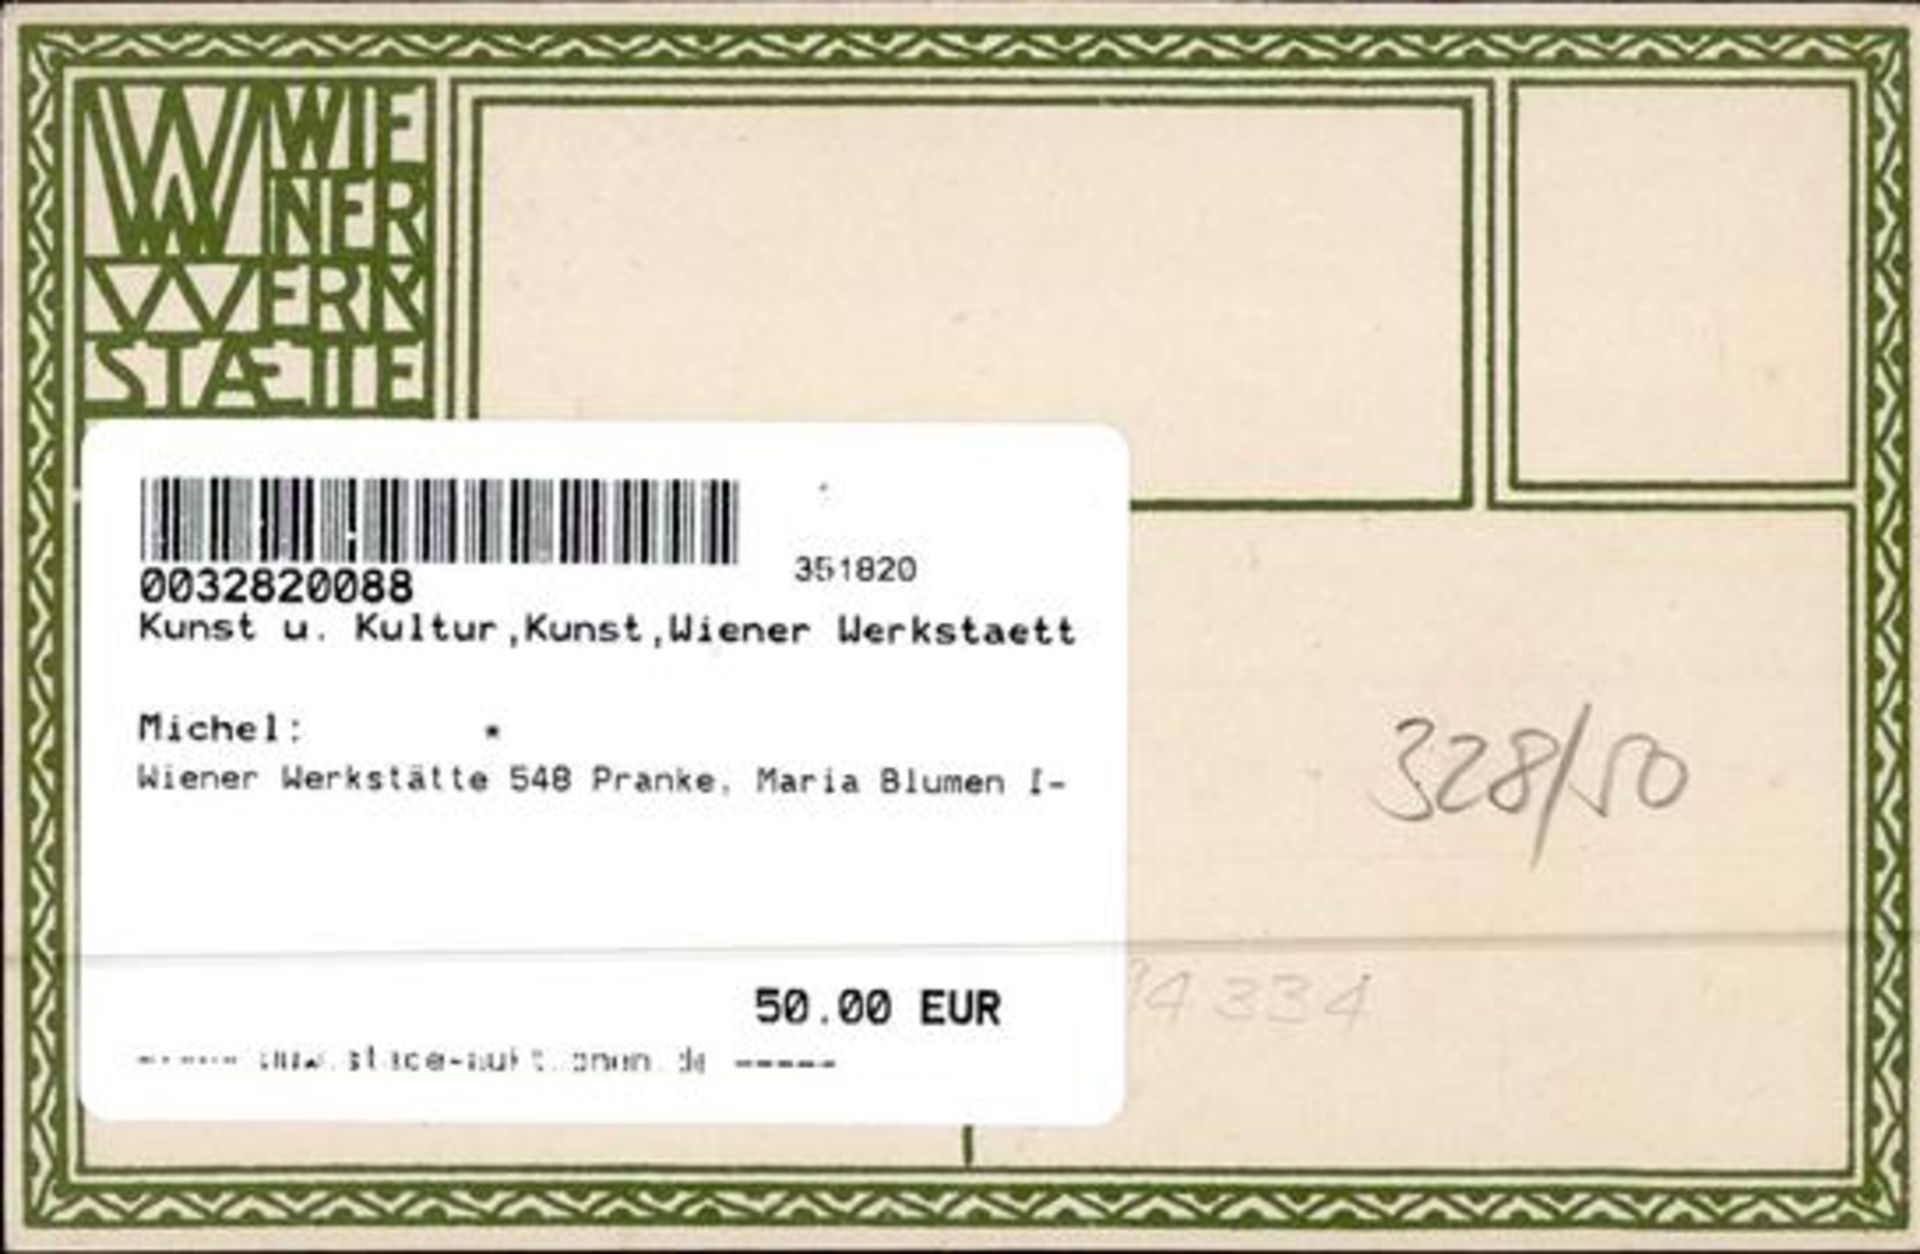 Wiener Werkstätte 548 Pranke, Maria Blumen I- - Bild 2 aus 2